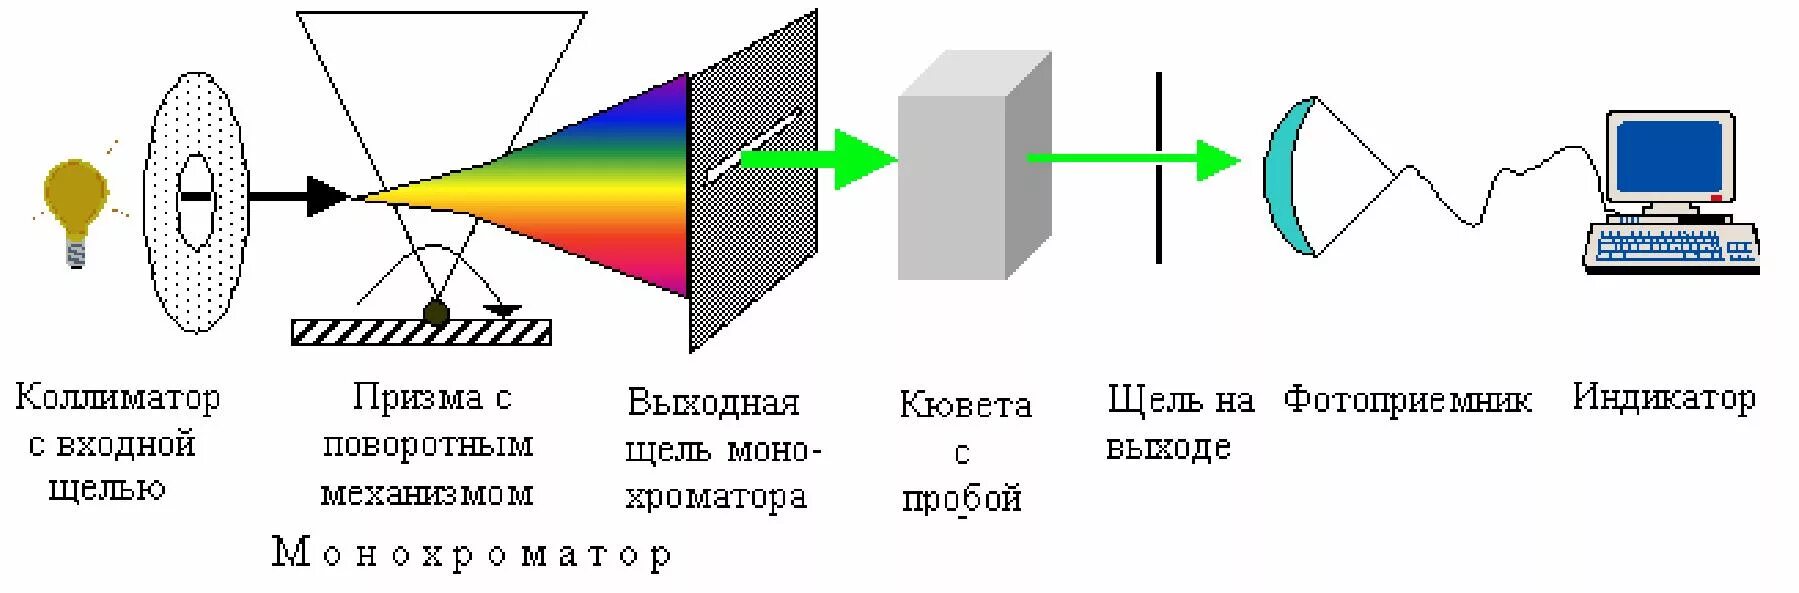 Спектрофотометр принцип работы. Принципиальная схема прибора для спектрофотометрических измерений.. Принципиальная схема однолучевого спектрофотометра.. Спектрофотометрия принципиальная схема прибора. Принципиальная схема спектрофотометра.